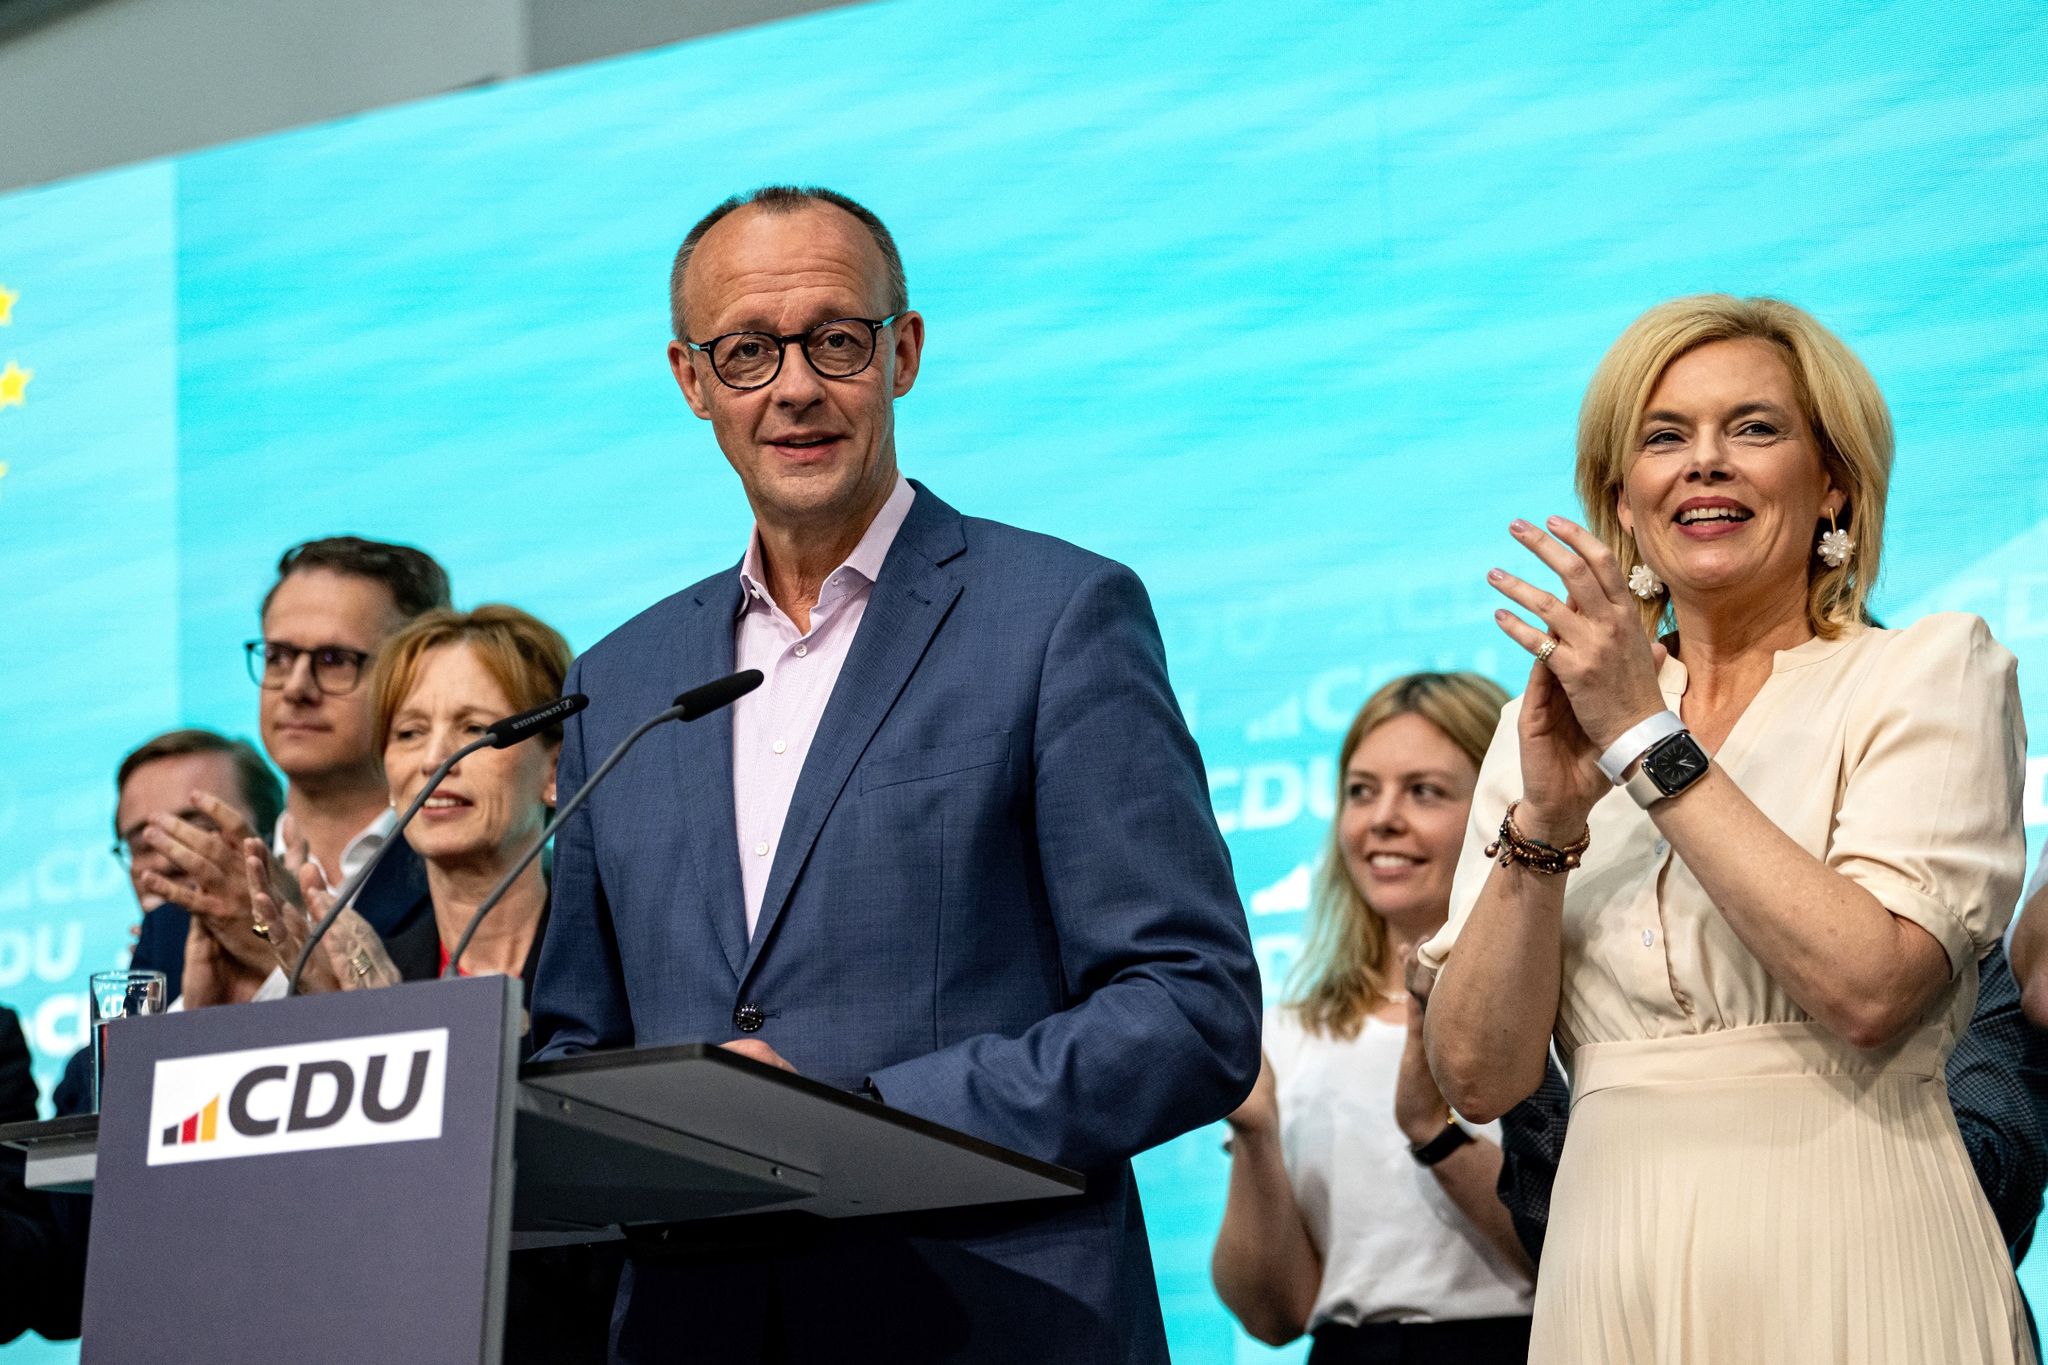 Union siegt bei Europawahl – AfD im Osten auf Platz eins